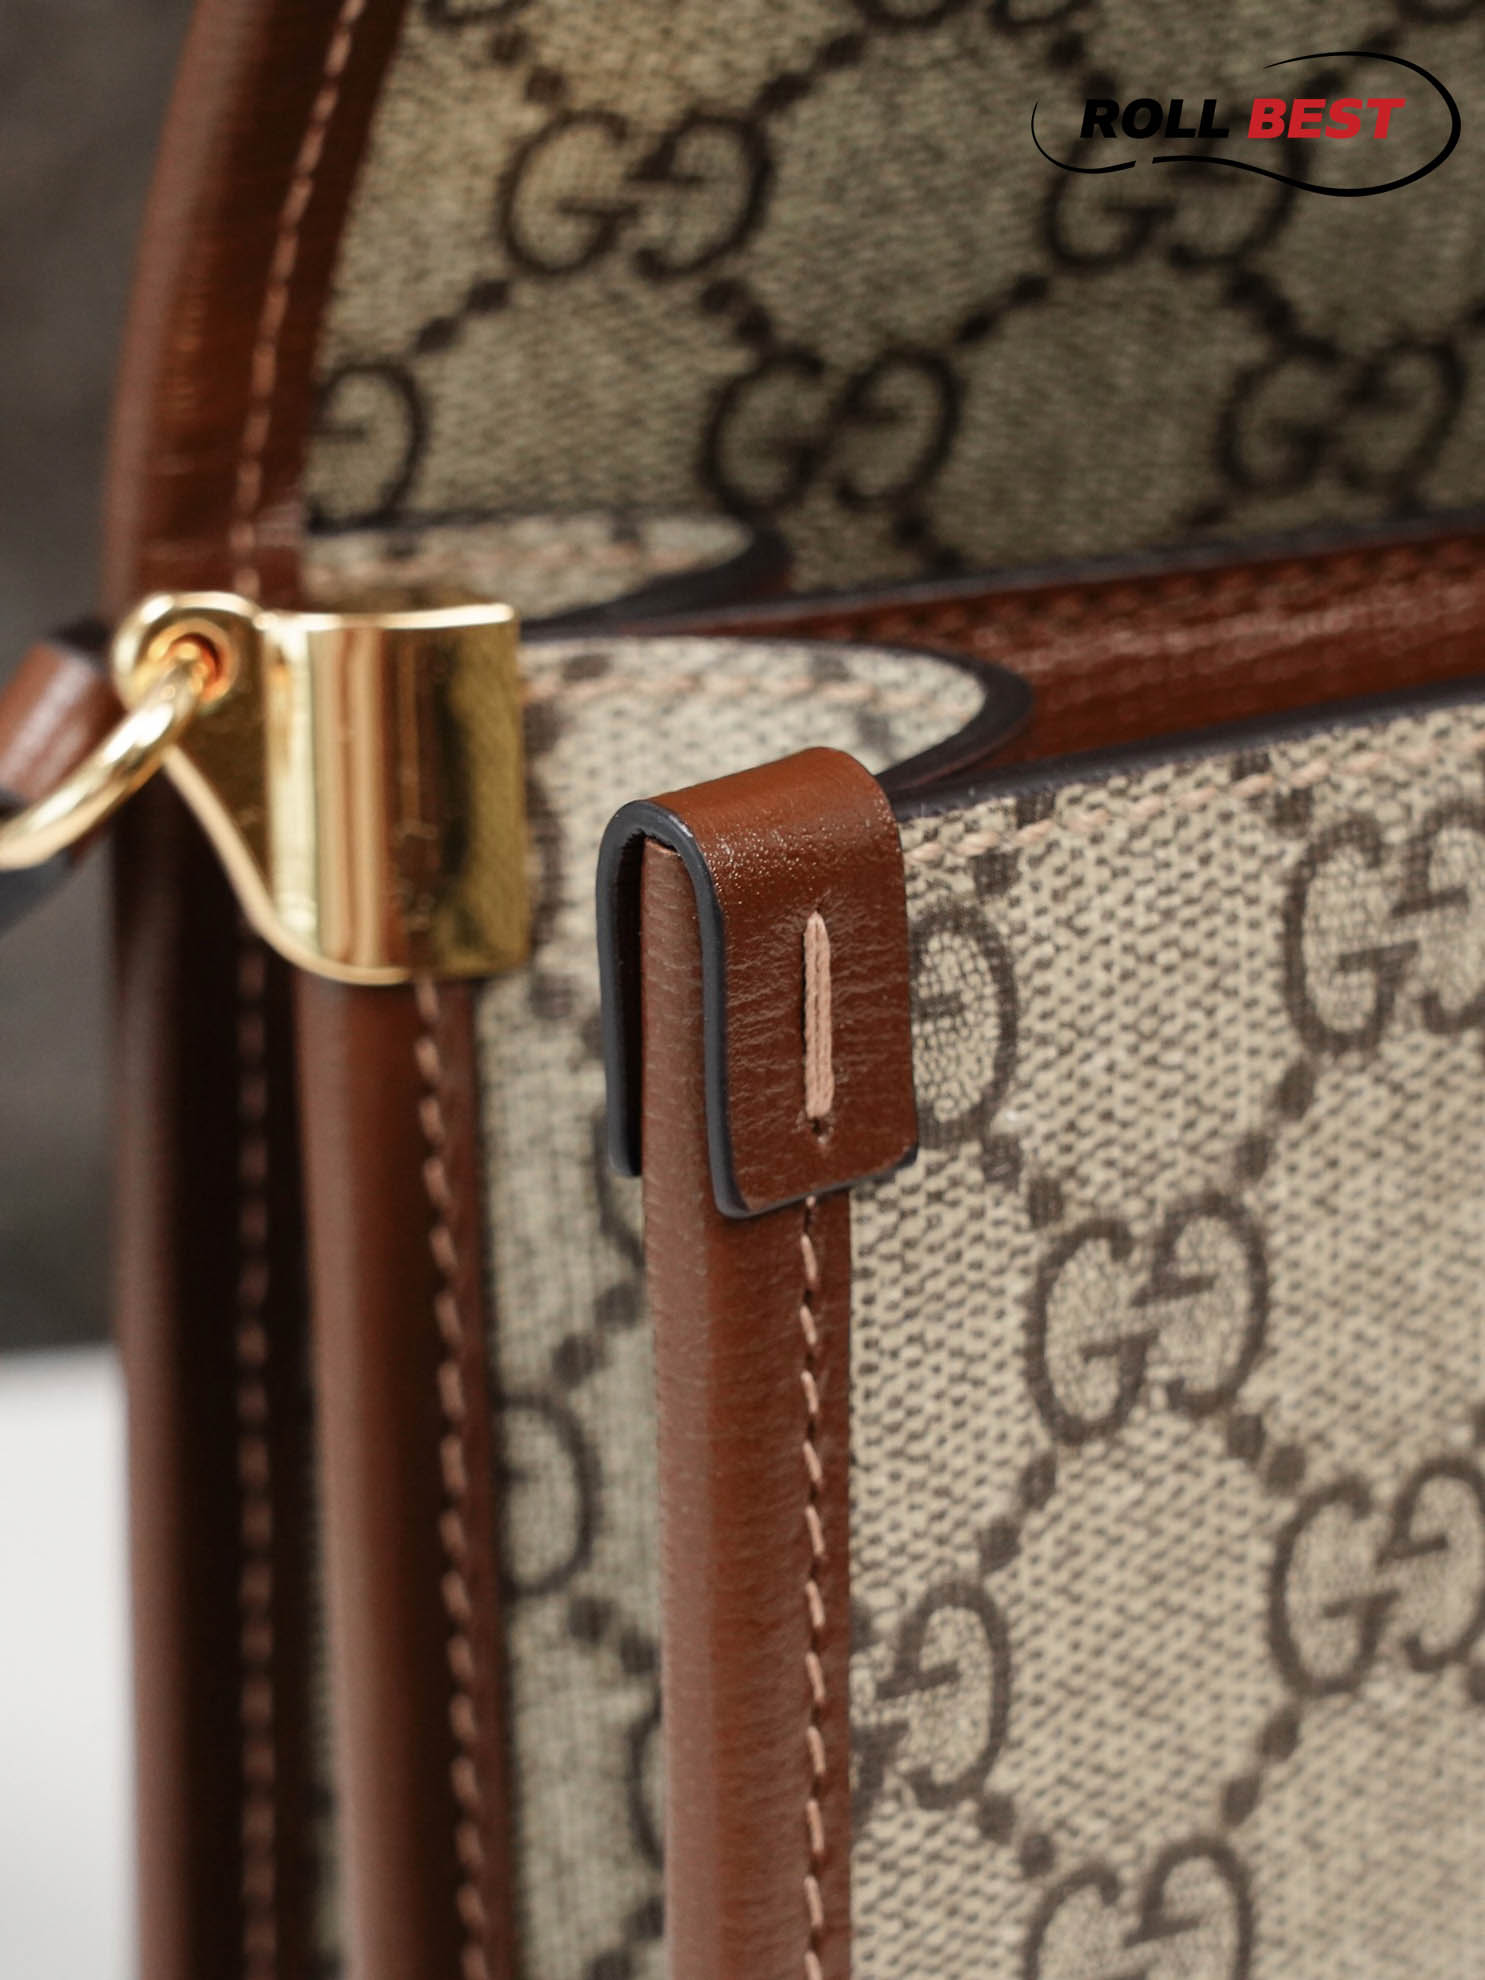 Túi Đeo Chéo Gucci Mini Shoulder Bag With Interlocking G